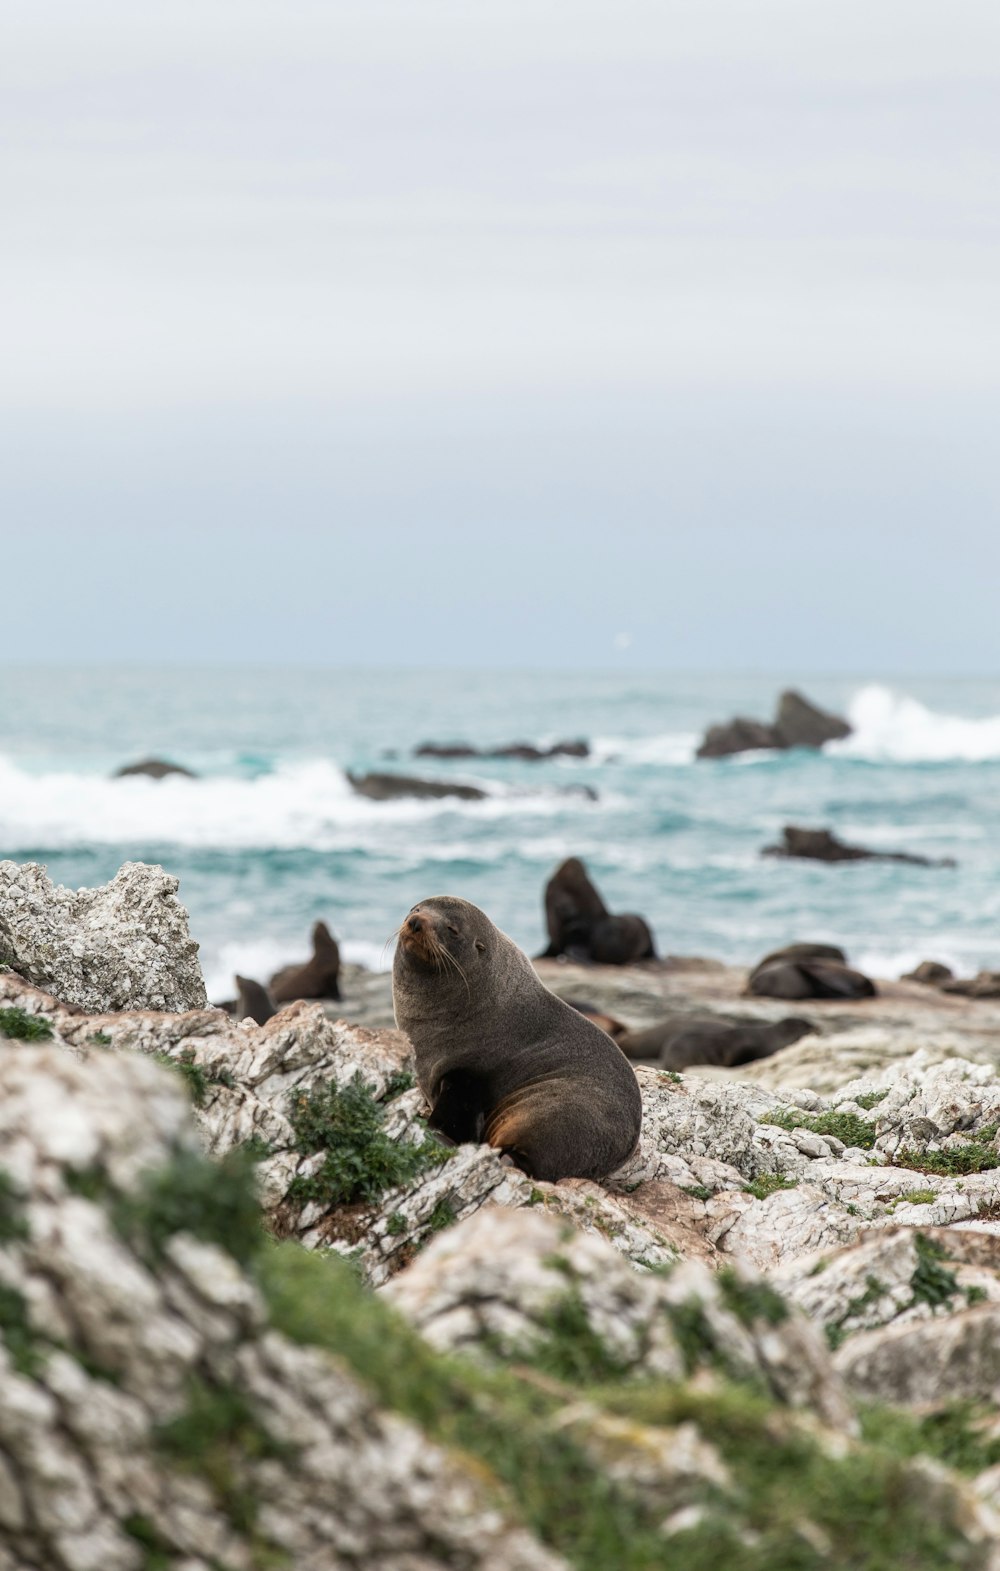 Fur Seal on Rocks by Ocean Looking at Camera